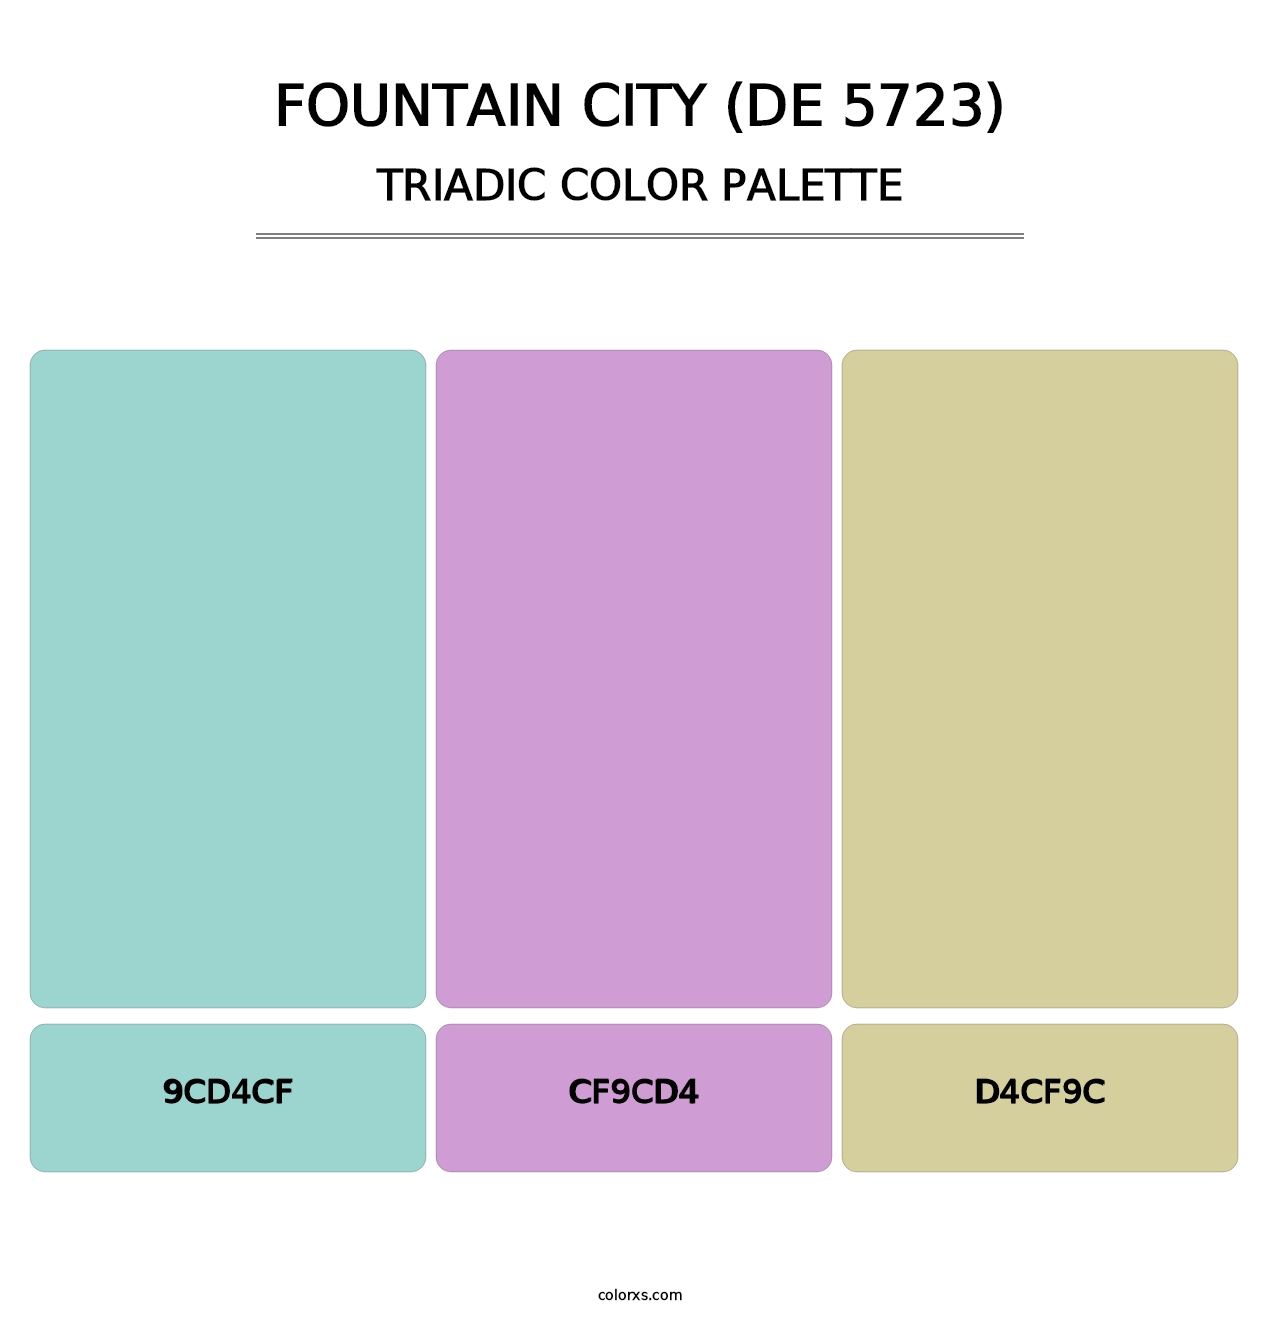 Fountain City (DE 5723) - Triadic Color Palette